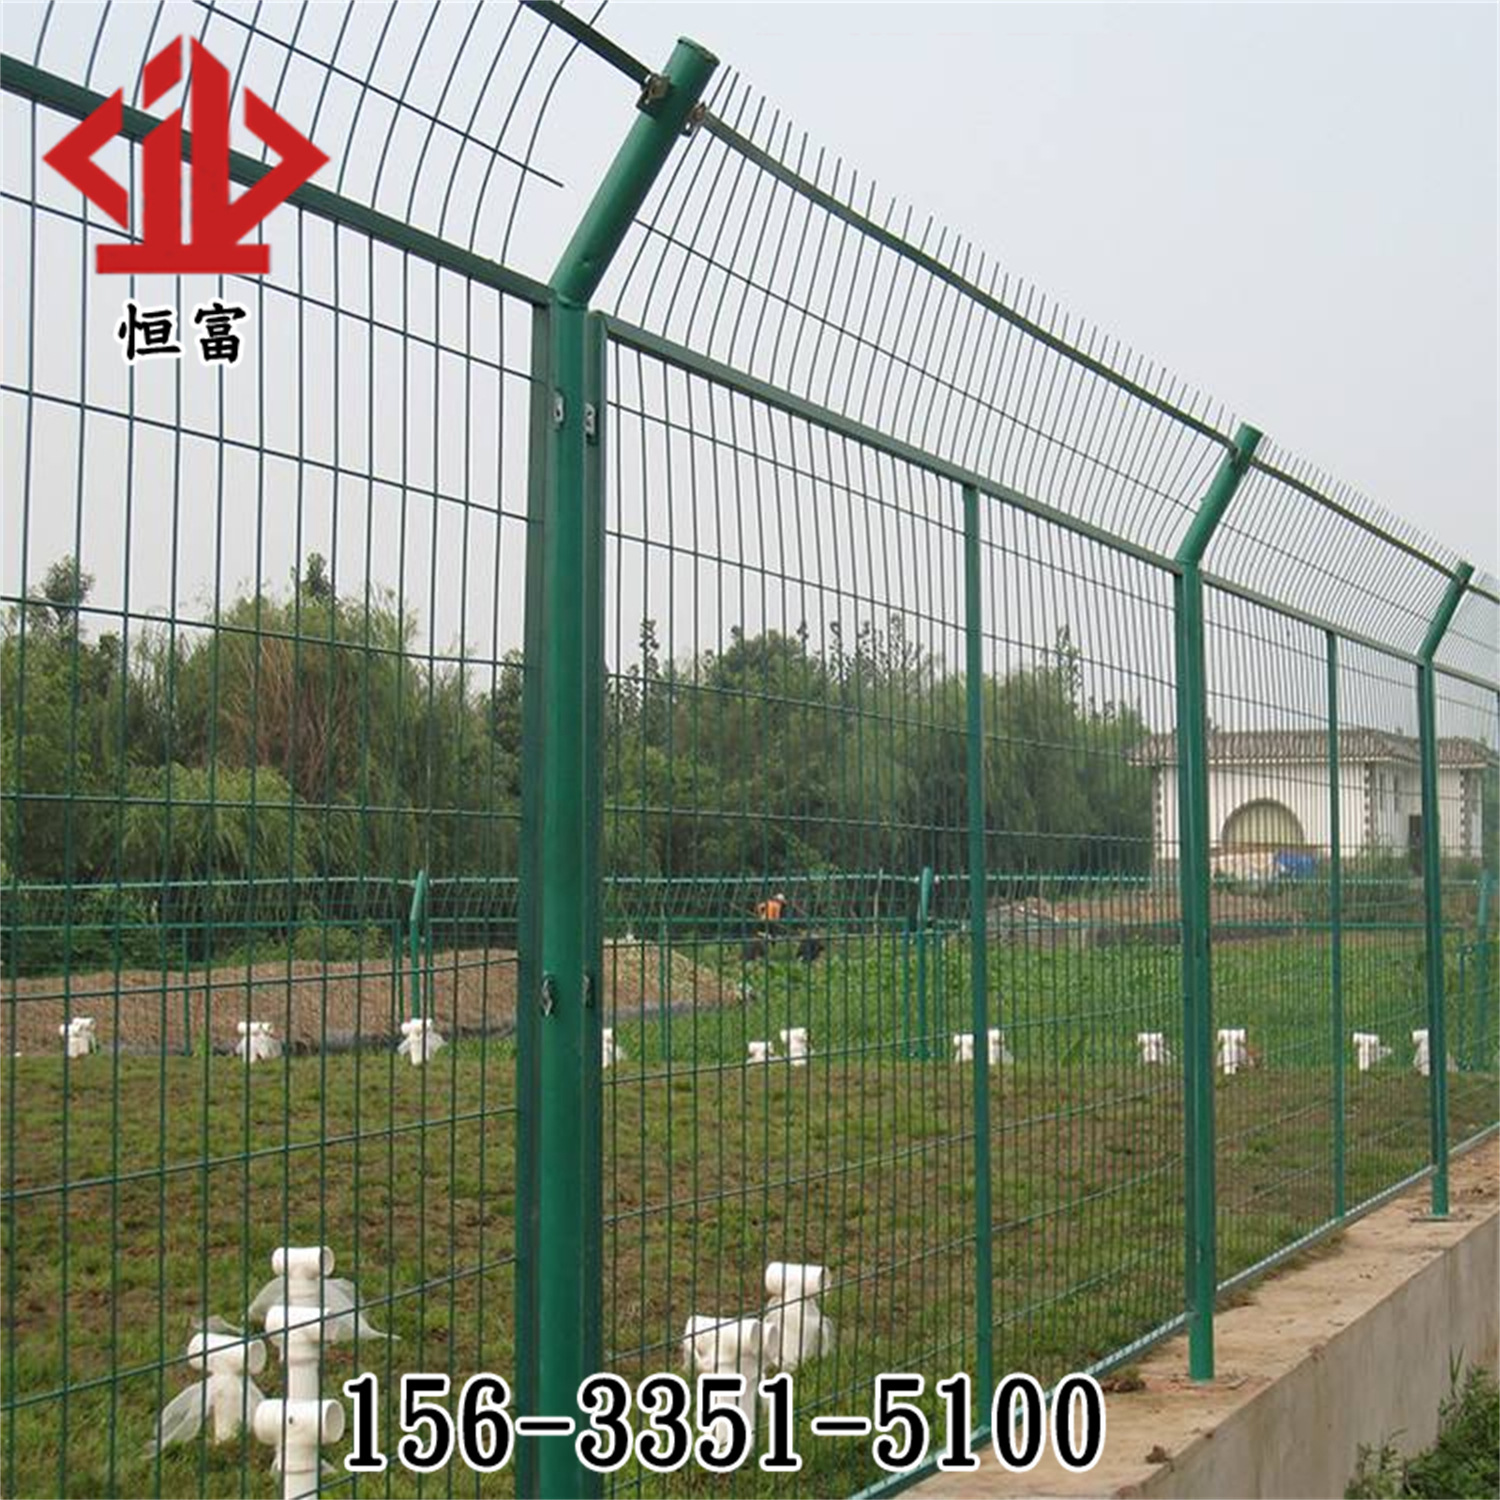 焊接网隔离栅 水源地围栏带框防护网 水库围栏 水源地防护网厂家